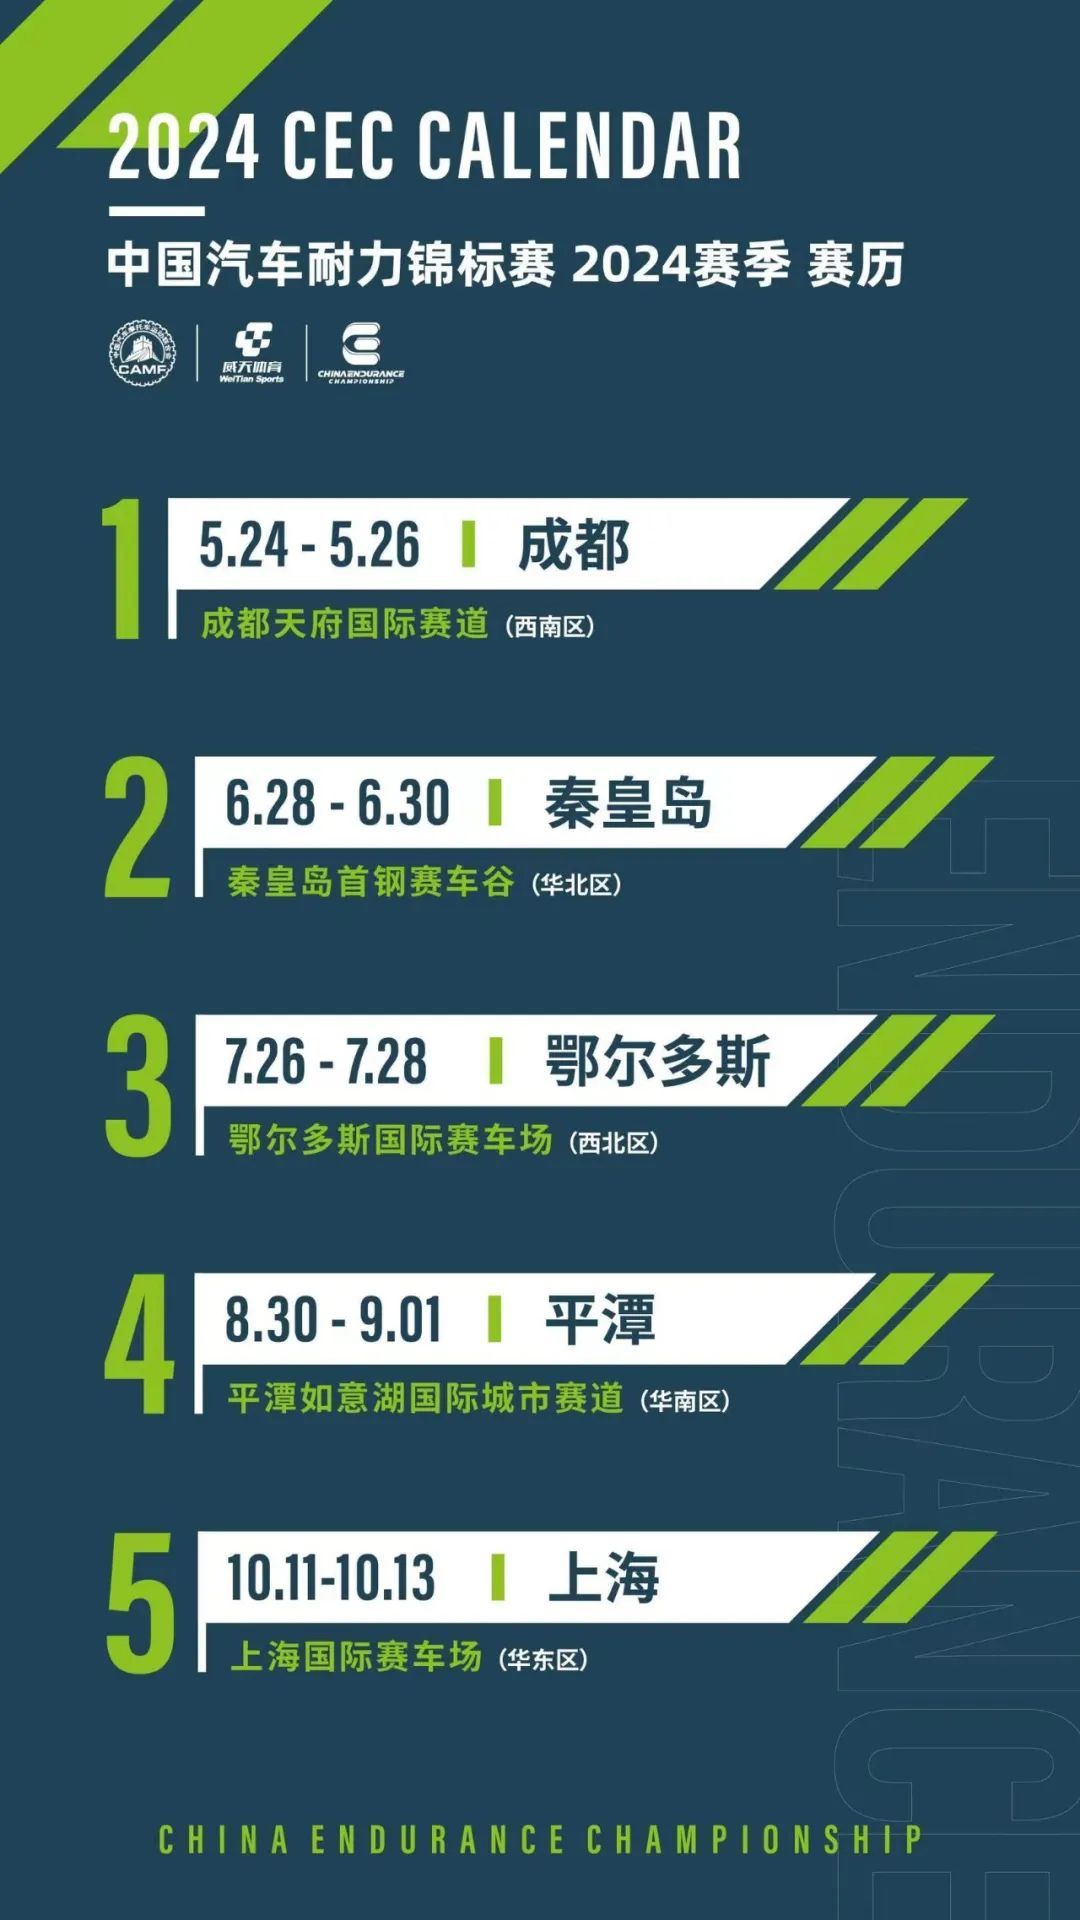 China Endurance Championship seizoenskalender 2024